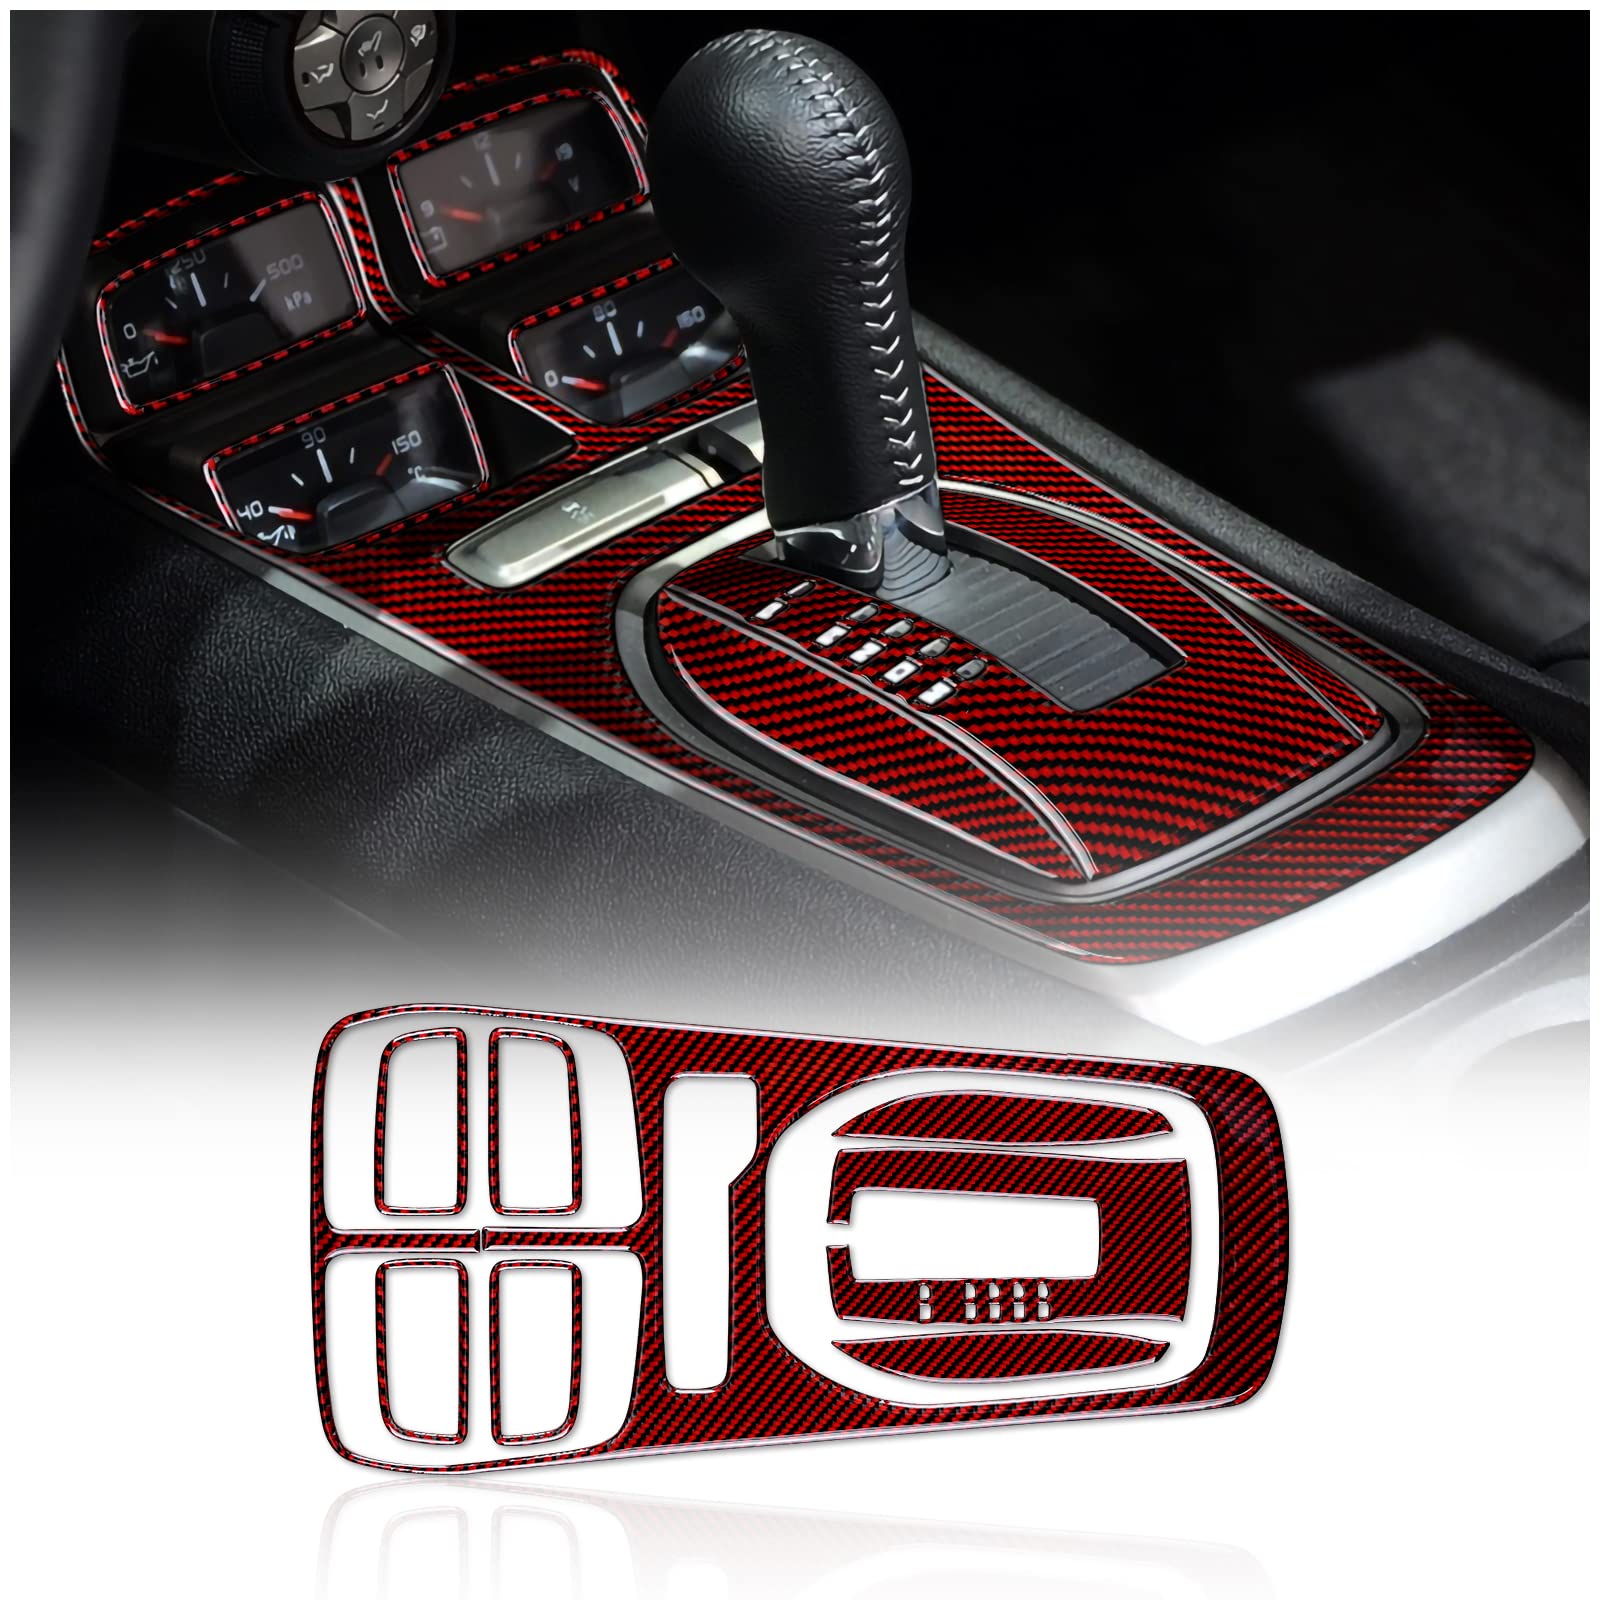 KUNGKIC Kohlefaser Schalthebelknauf Konsole Media Panel Abdeckung Für Chevrolet Camaro 2010 2011 2012 2013 2014 2015 zubehör innenraum-Automatisch Schwarz Rot von KUNGKIC